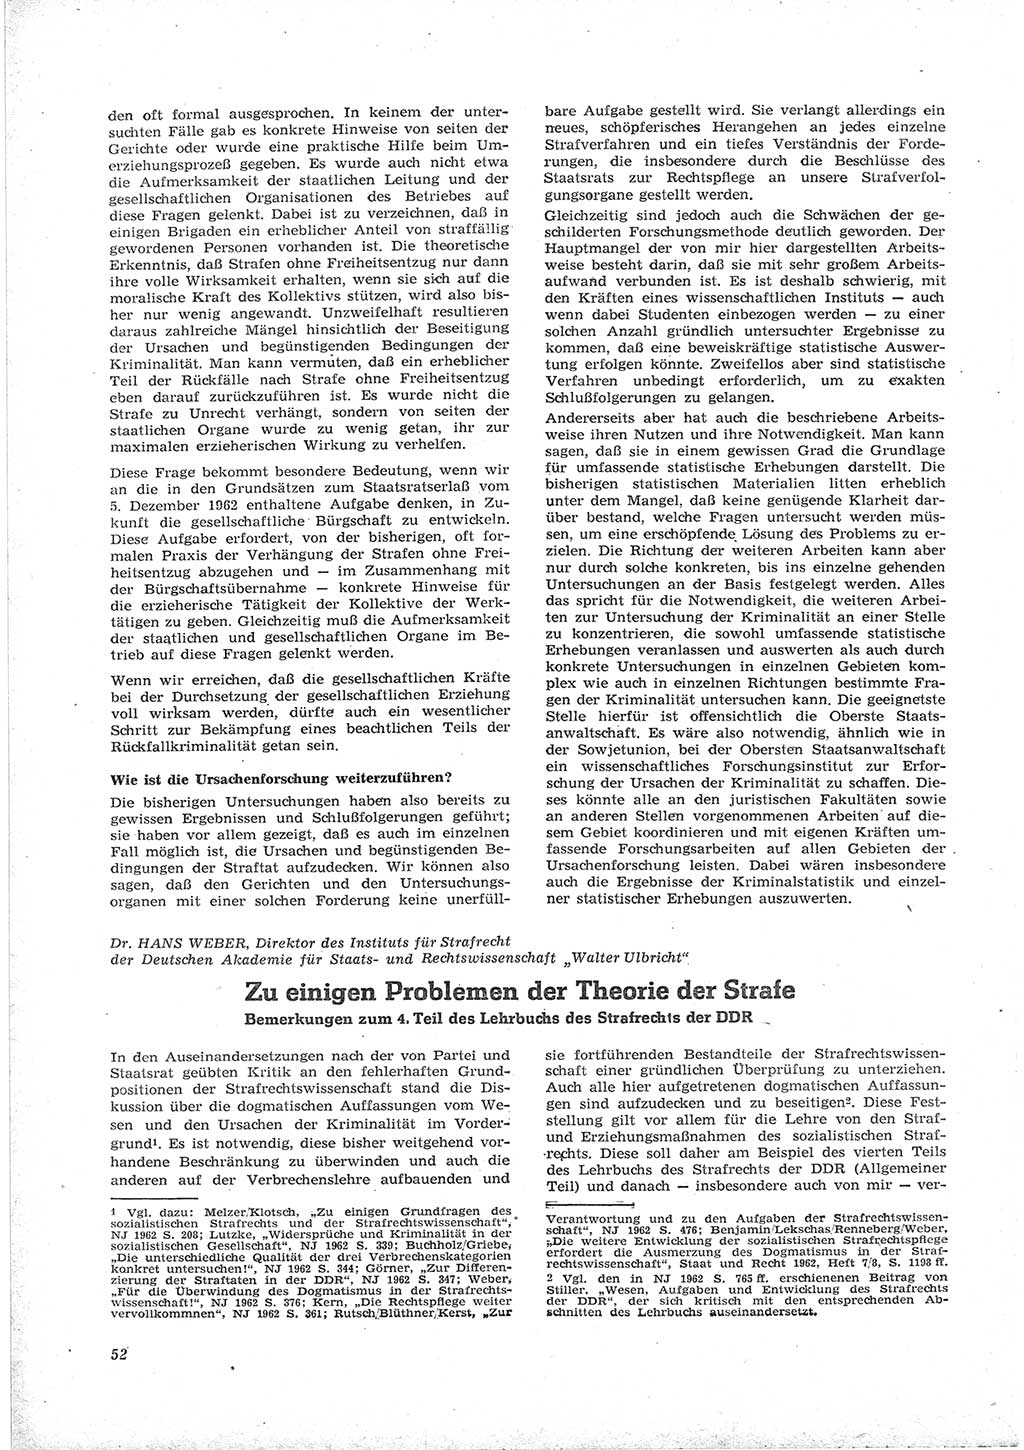 Neue Justiz (NJ), Zeitschrift für Recht und Rechtswissenschaft [Deutsche Demokratische Republik (DDR)], 17. Jahrgang 1963, Seite 52 (NJ DDR 1963, S. 52)